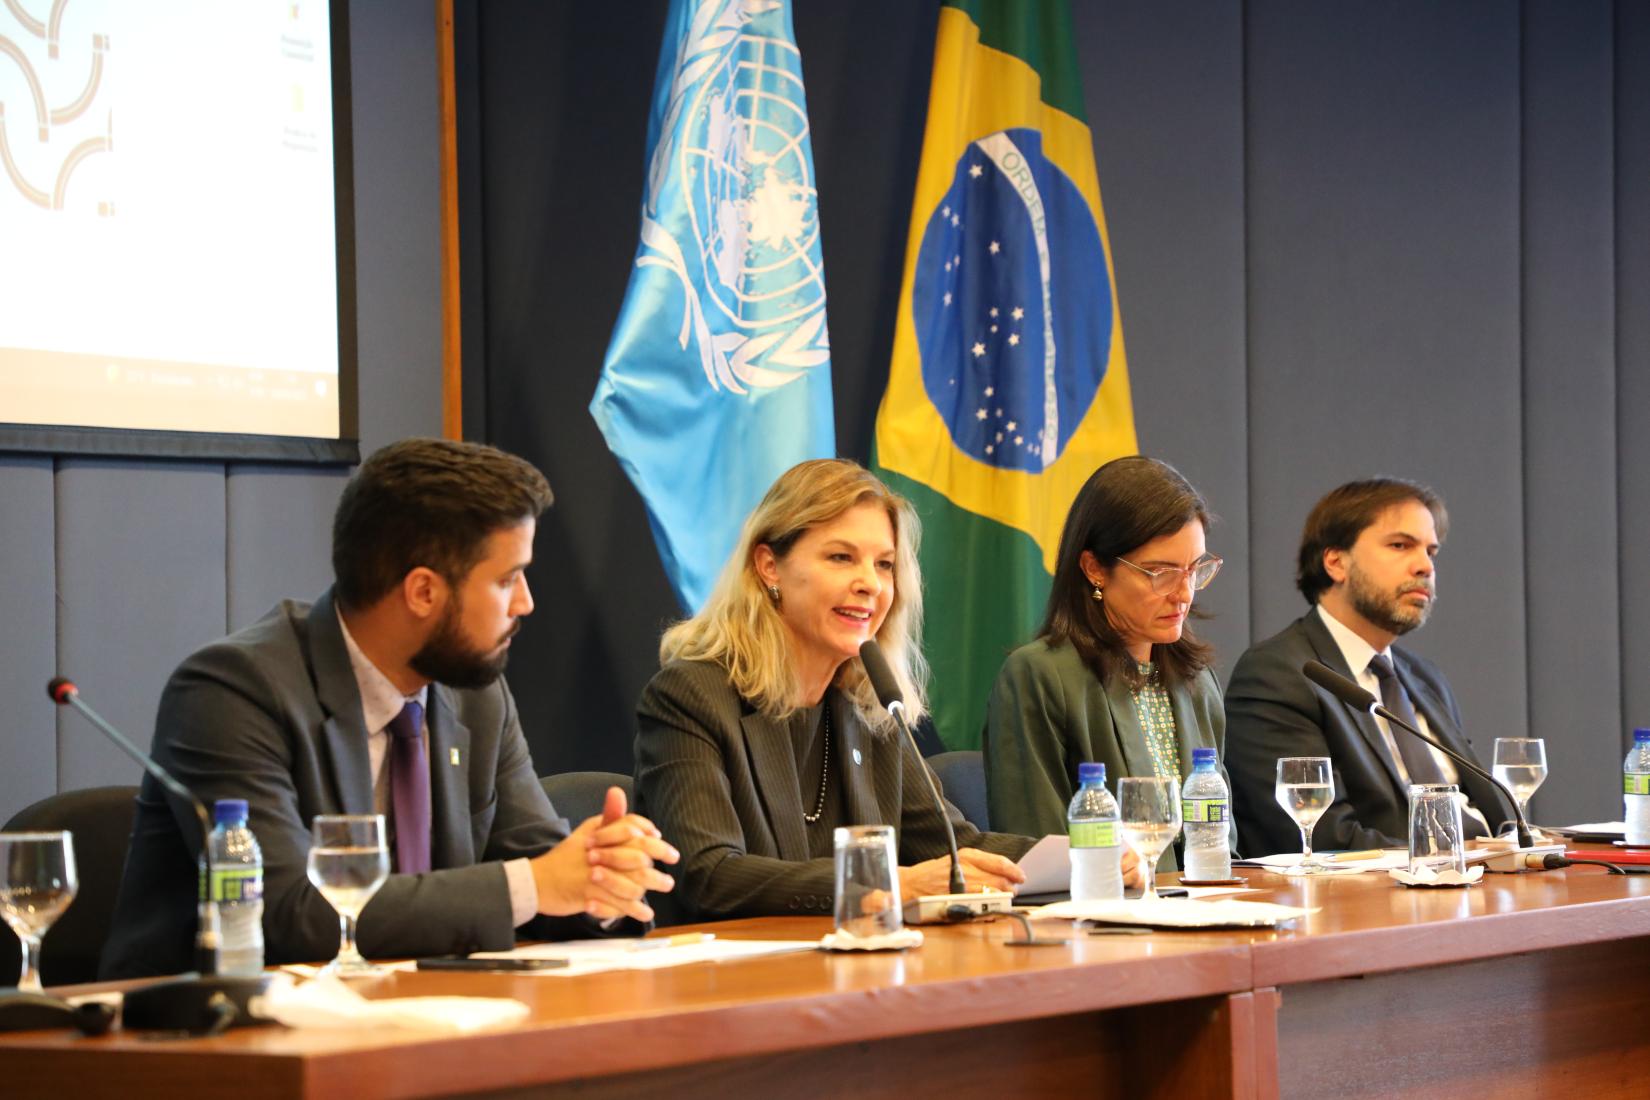 Silvia Rucks, coordenadora residente da ONU no Brasil, apresentou os princípios do novo Marco de Cooperação da ONU.